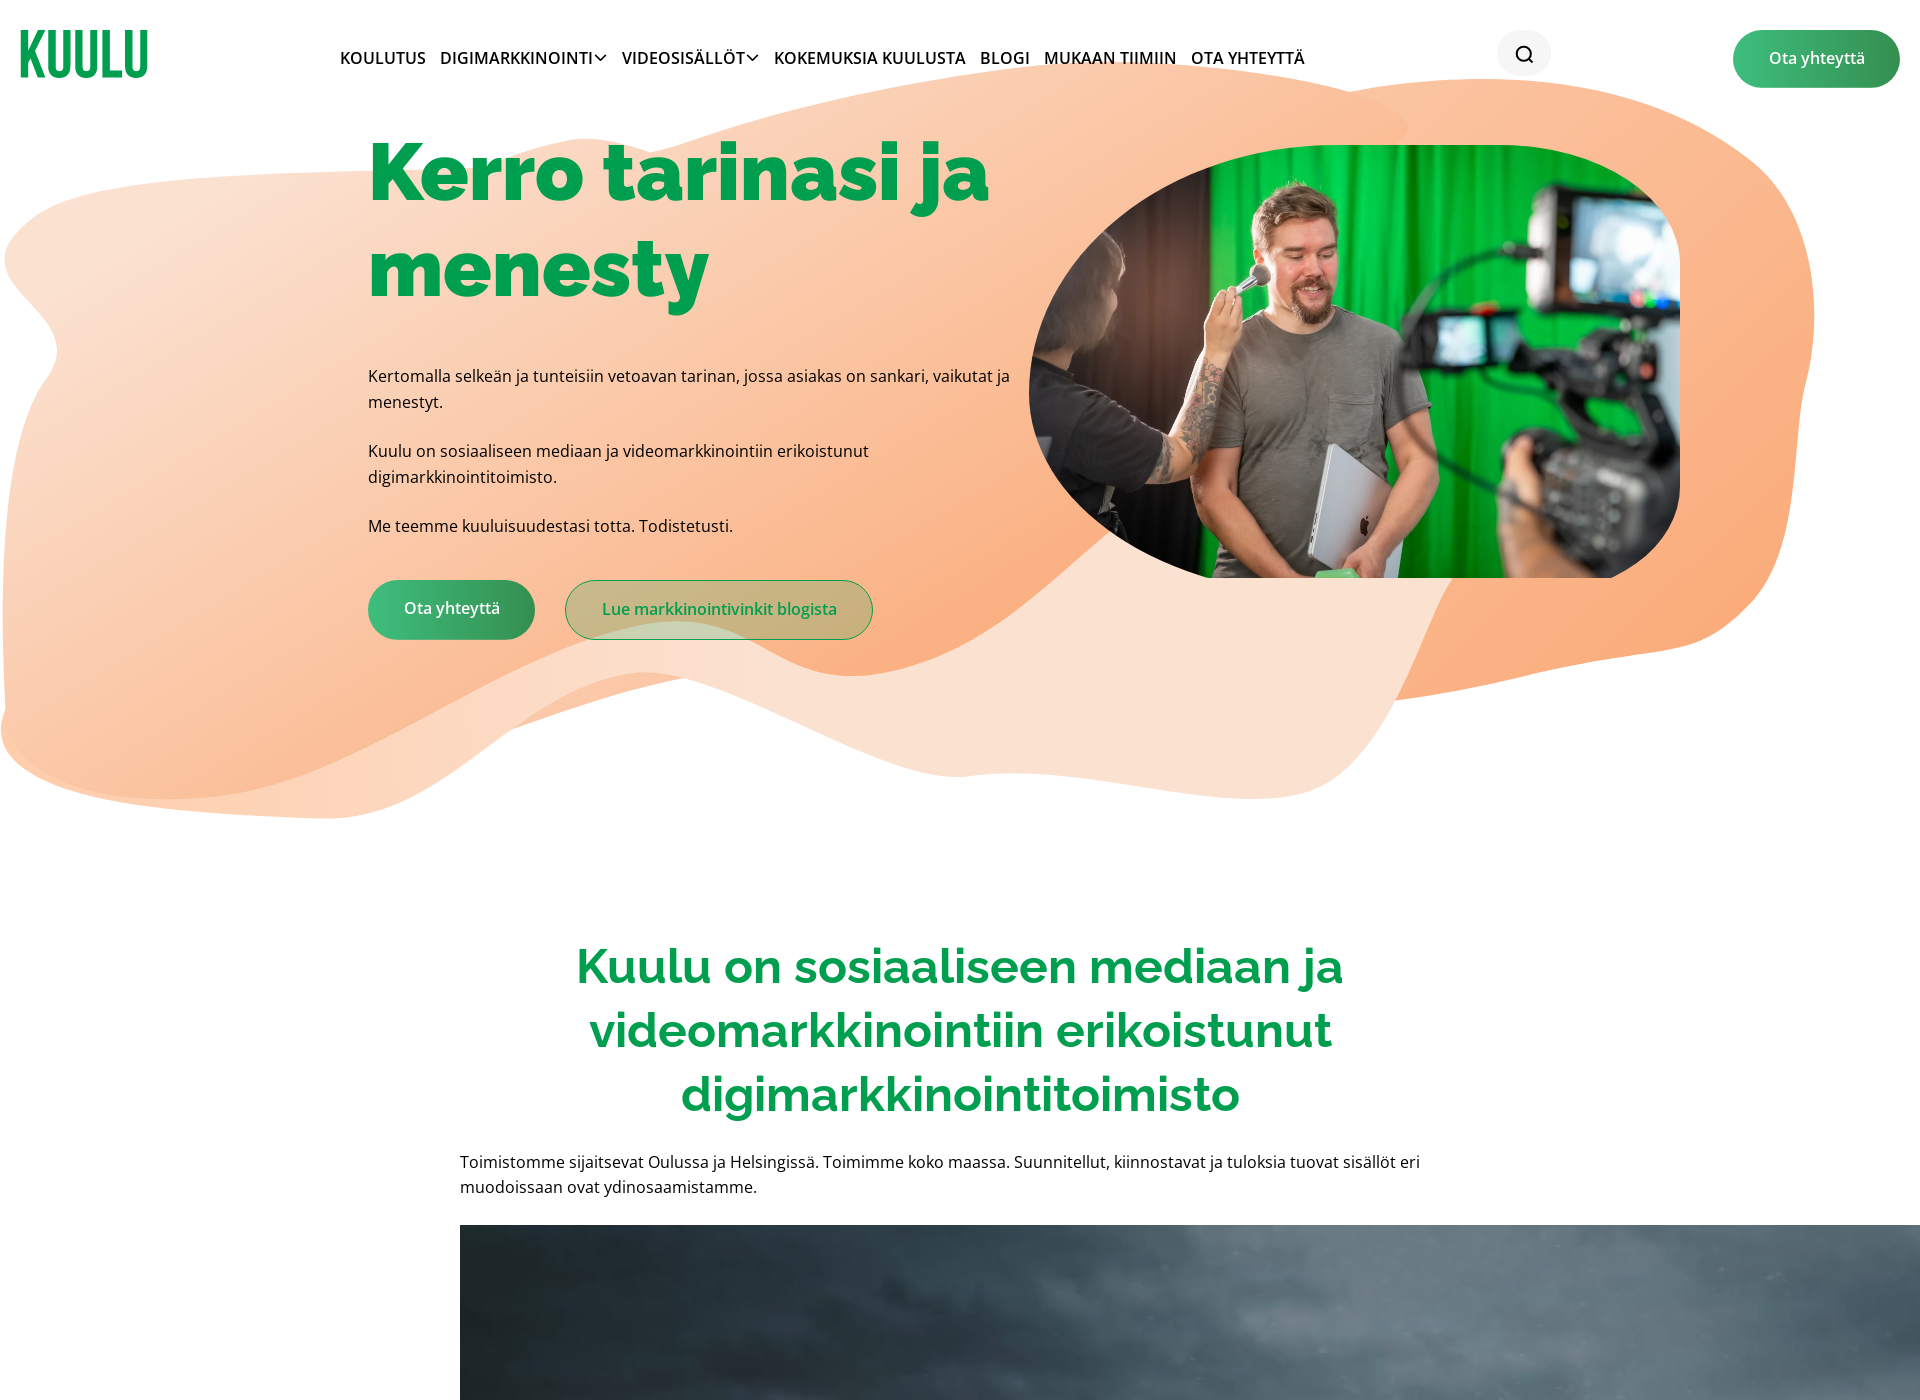 Näyttökuva kuulu.fi